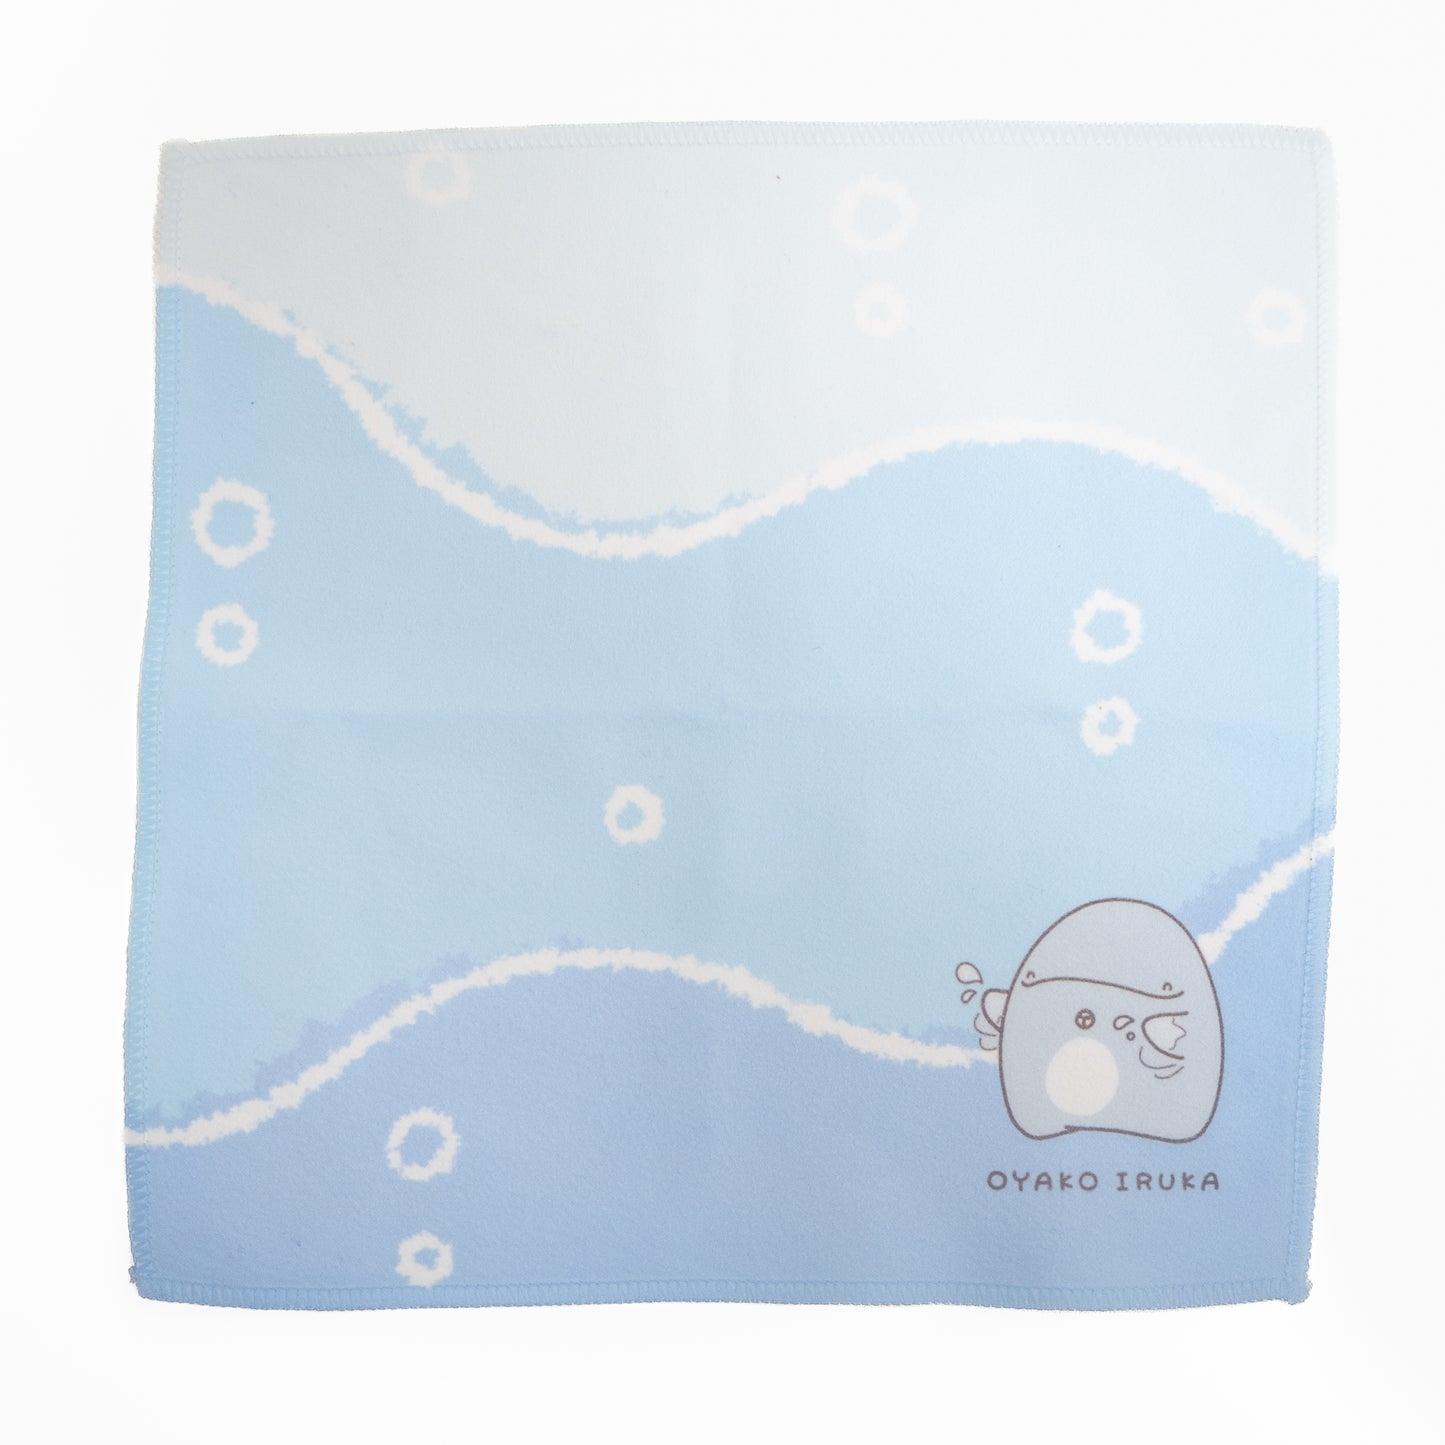 [Eltern- und Kinderdelfin] Taschentuchhandtuch